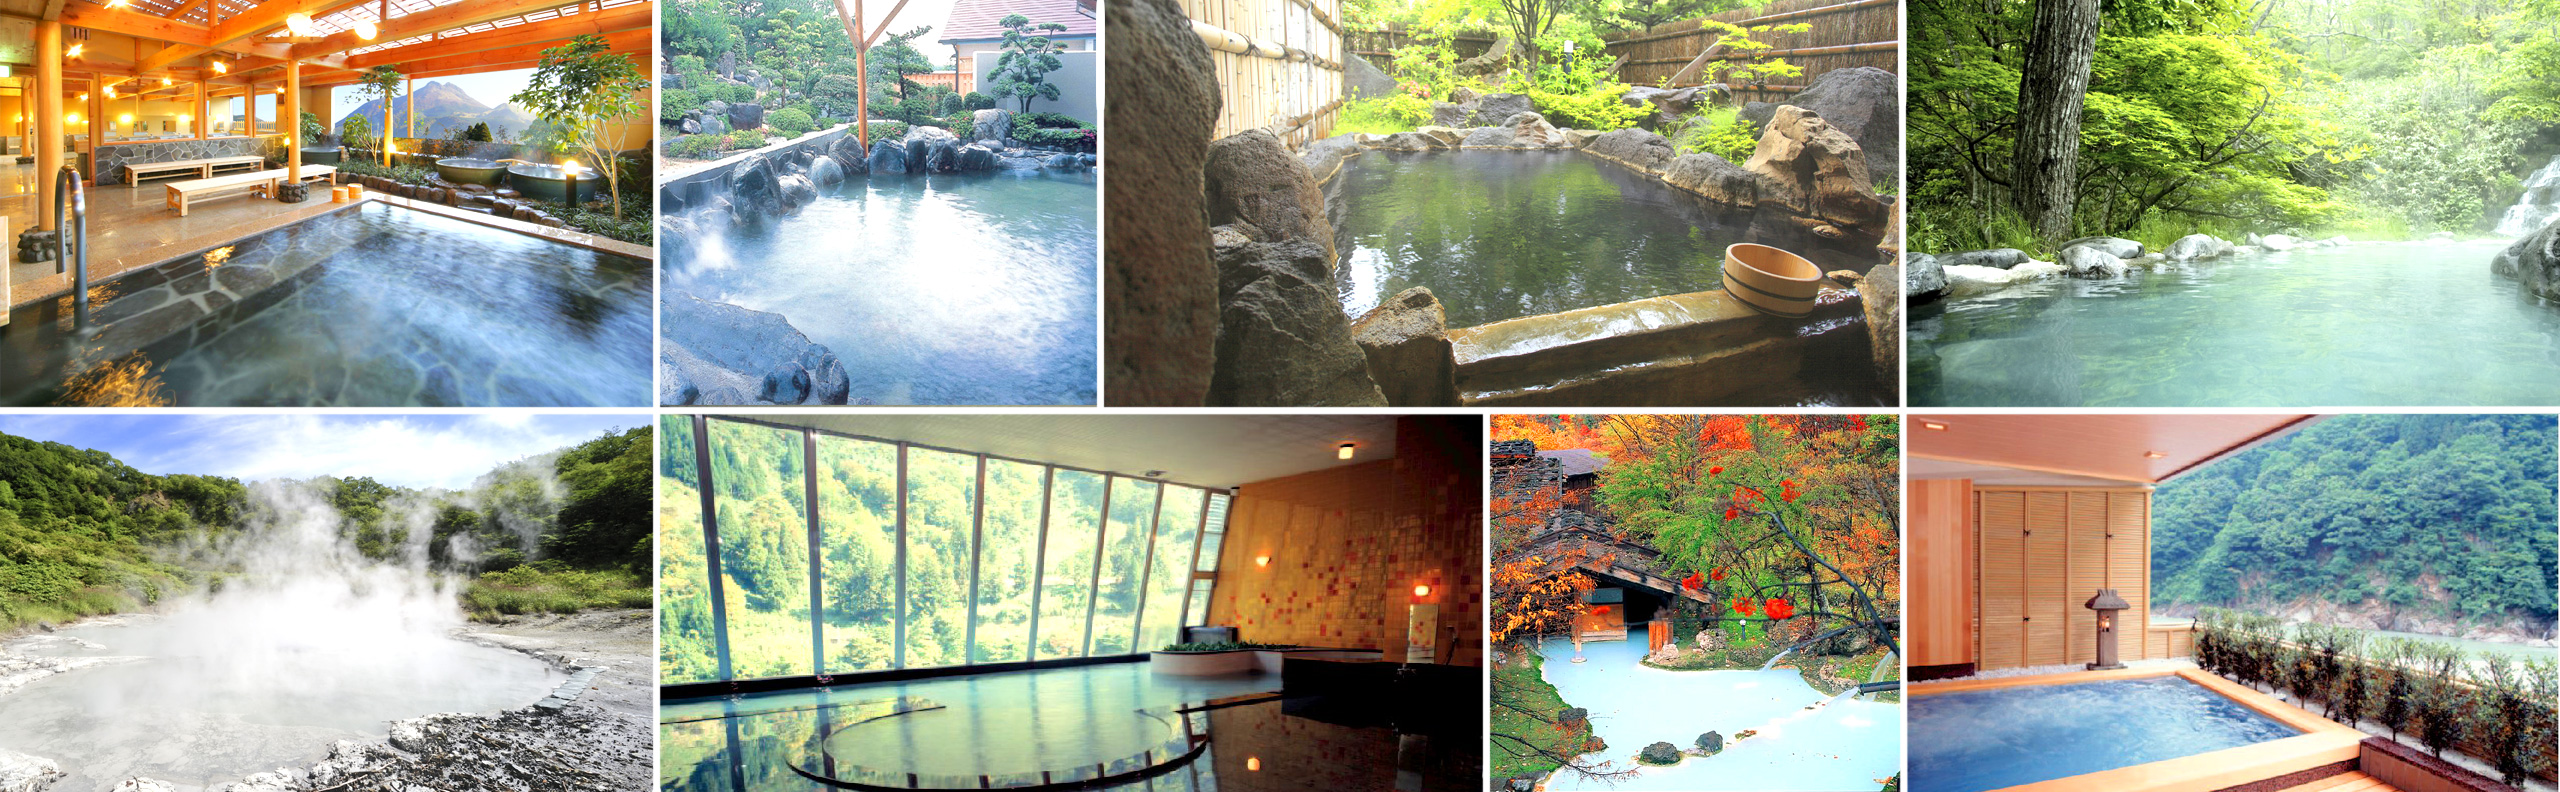 にっぽんの温泉100選 Top10 ランキング 日本旅行の旅館 ホテル予約